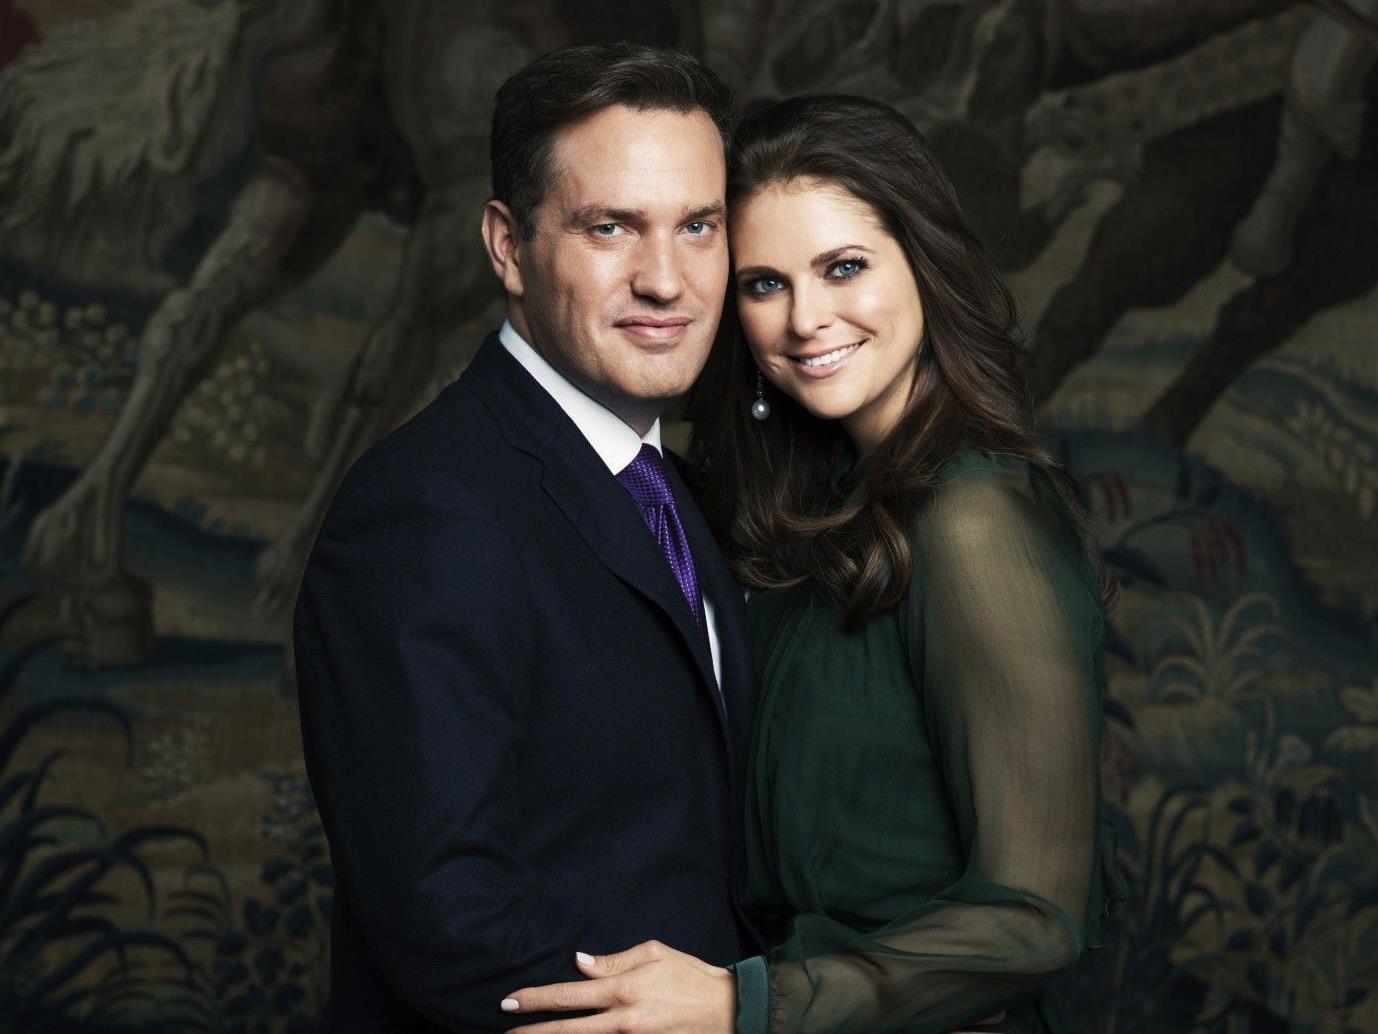 Die Schwedische Prinzessin Madeleine mit ihrem Verlobten dem US-amerikanischen Geschäftsmann Chris O'Neill.